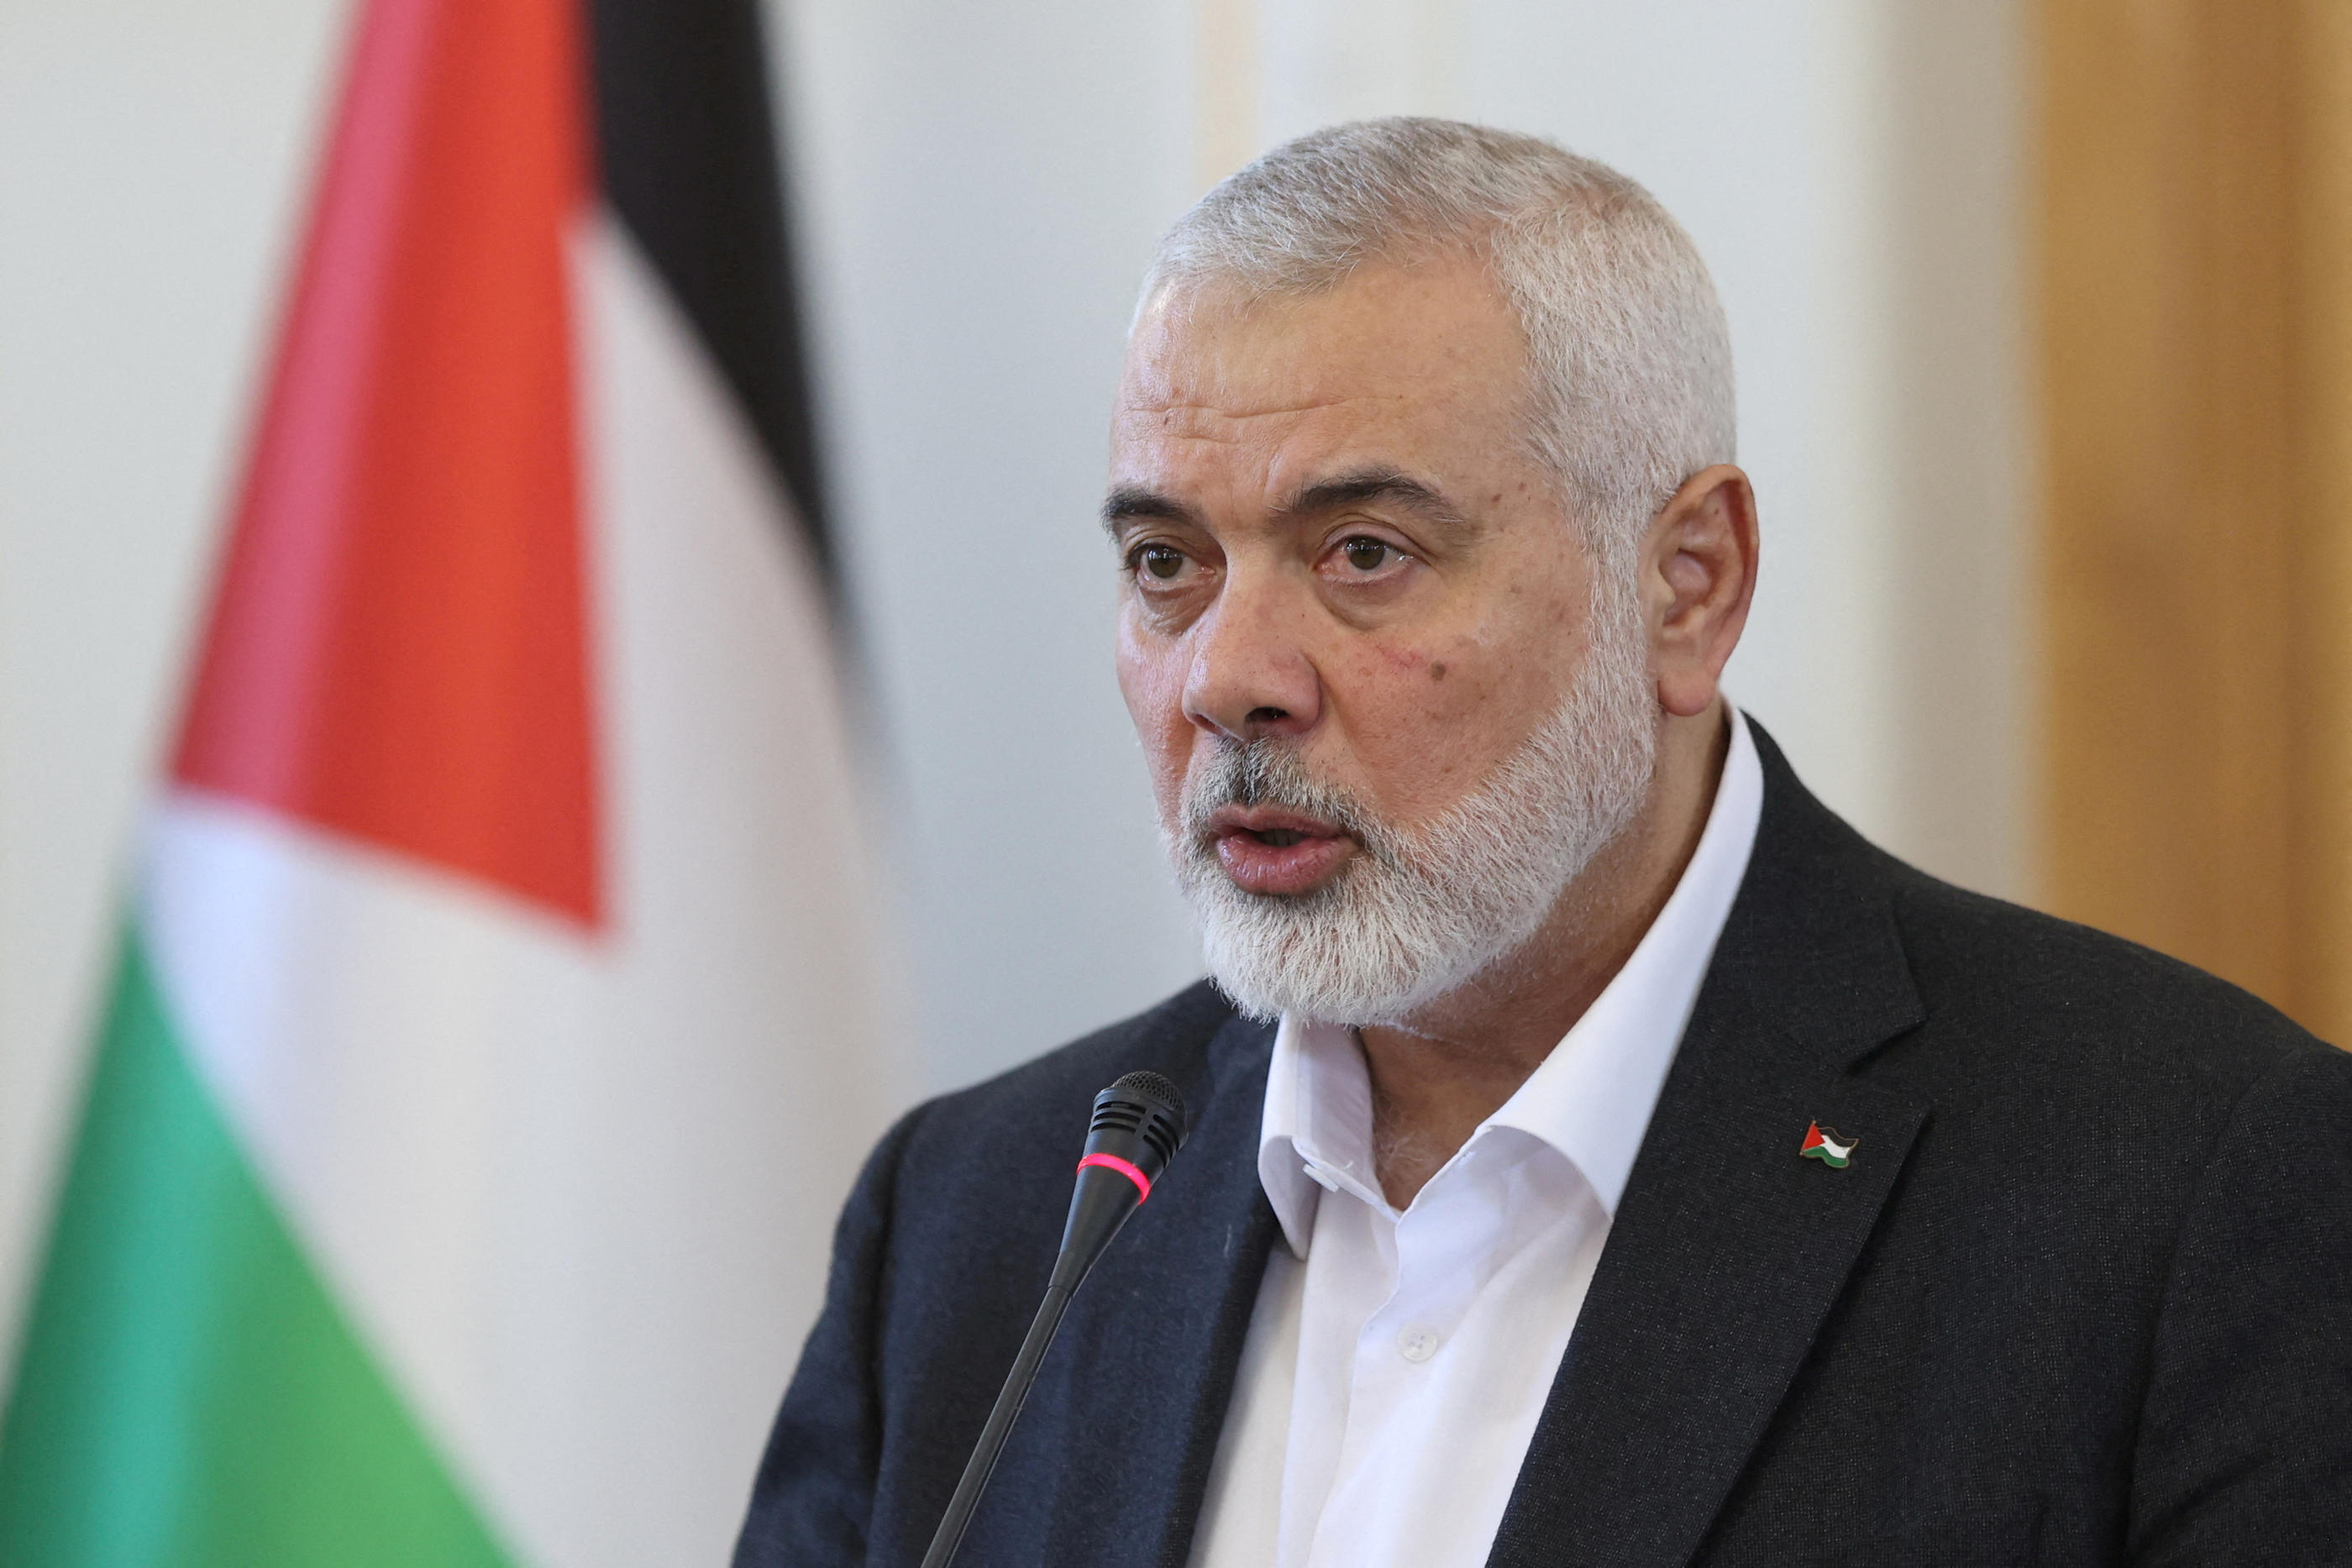 Le chef du Hamas Ismaïl Haniyeh a informé le Qatar et l'Egypte que le mouvement avait accepté une proposition de trêve à Gaza. Reuters / Majid Asgaripour